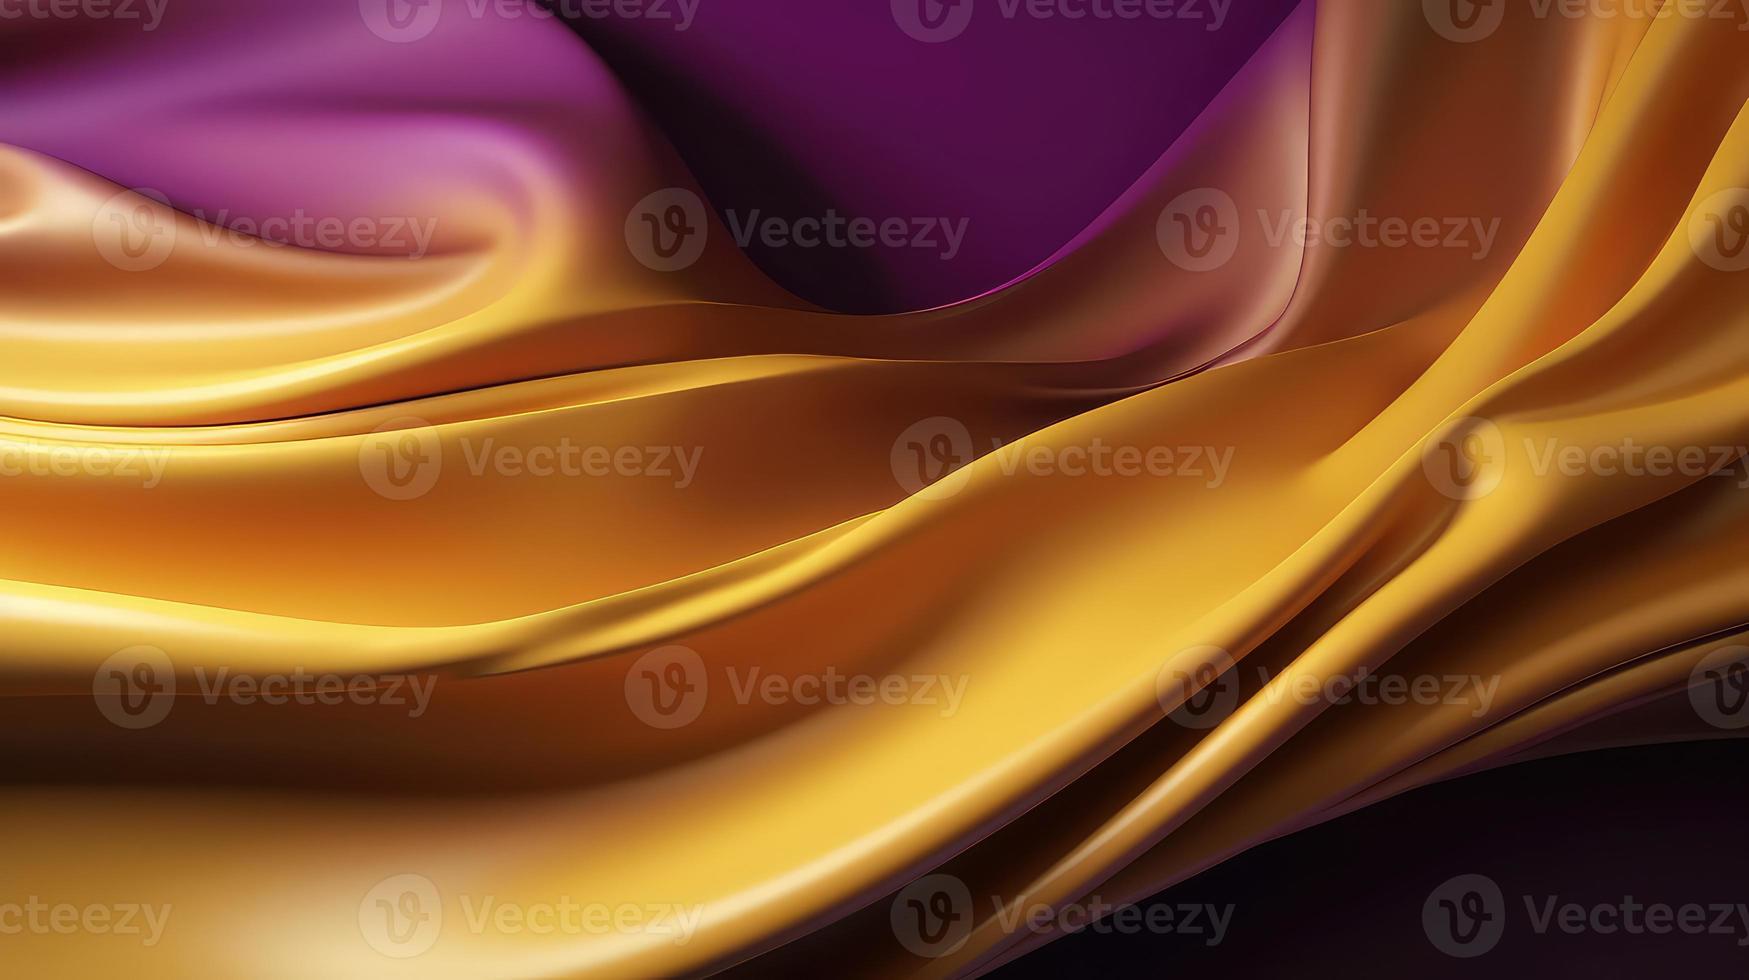 abstrakt bakgrund med 3d Vinka ljus guld och lila lutning silke tyg. foto